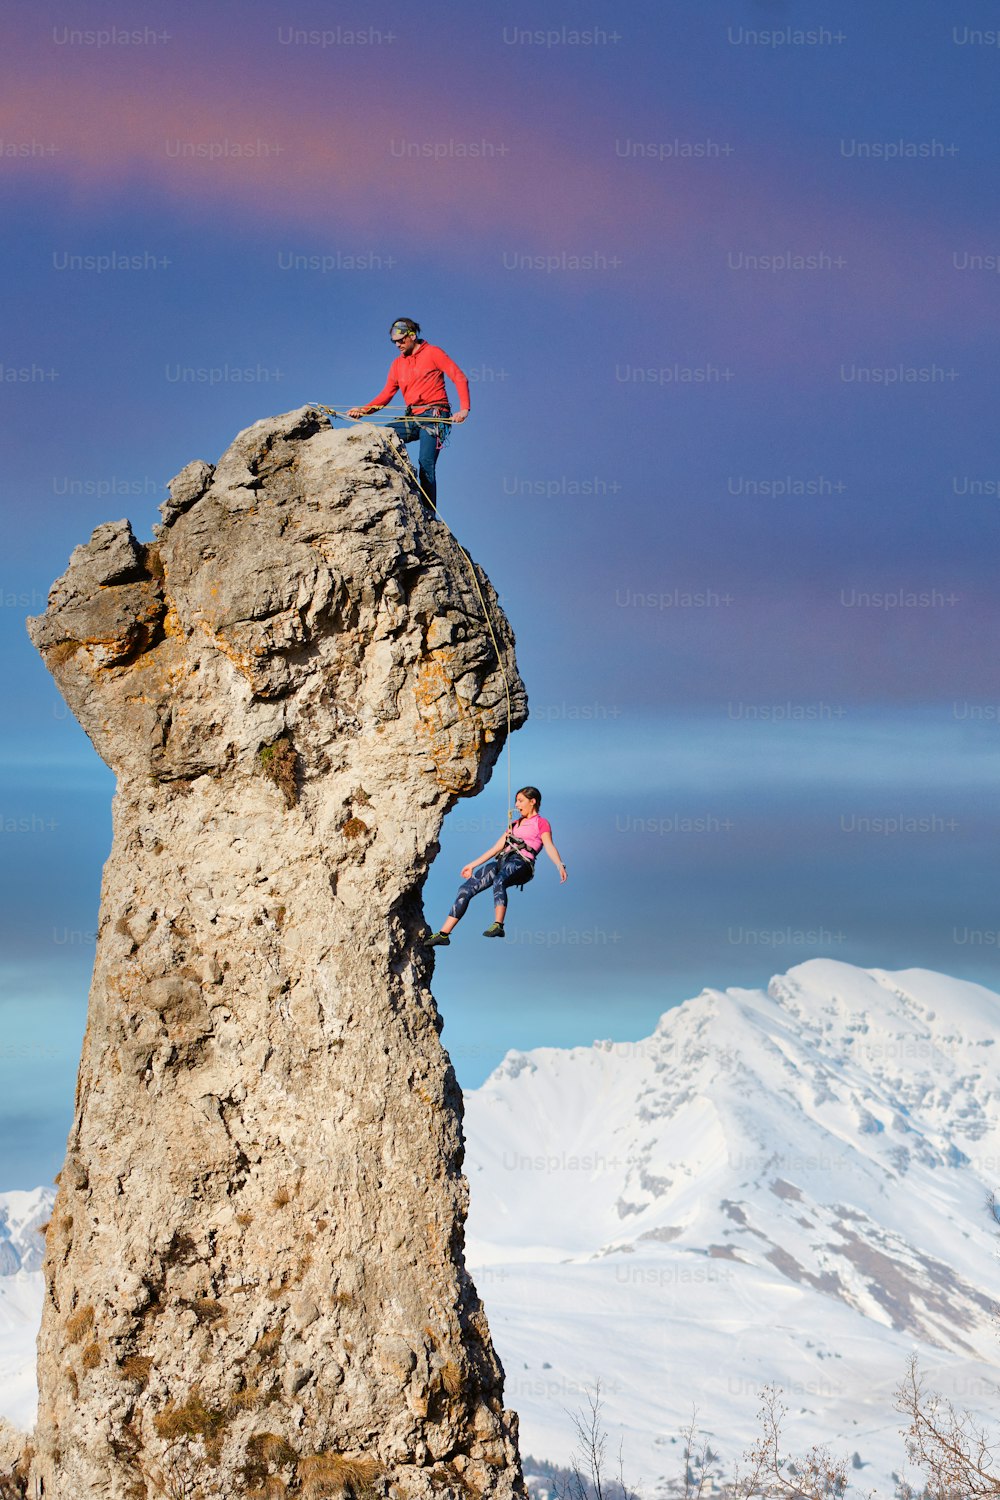 Un escalador en la cima hace que su compañero baje por la cuerda